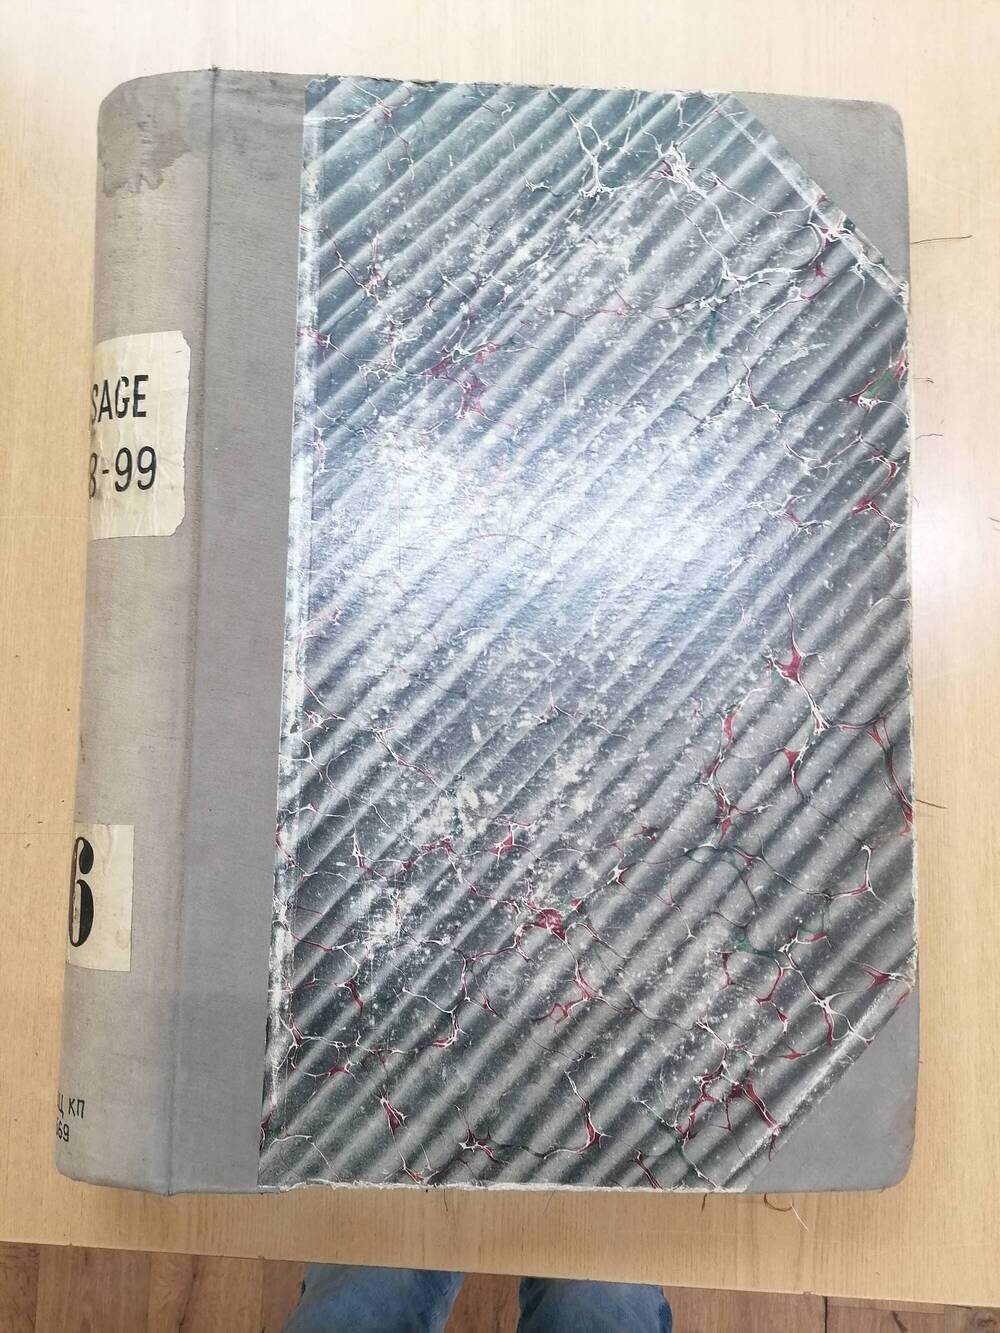 Альбом с образцами набивных тканей. Ярлыки Tissage 1898-99 и 46.